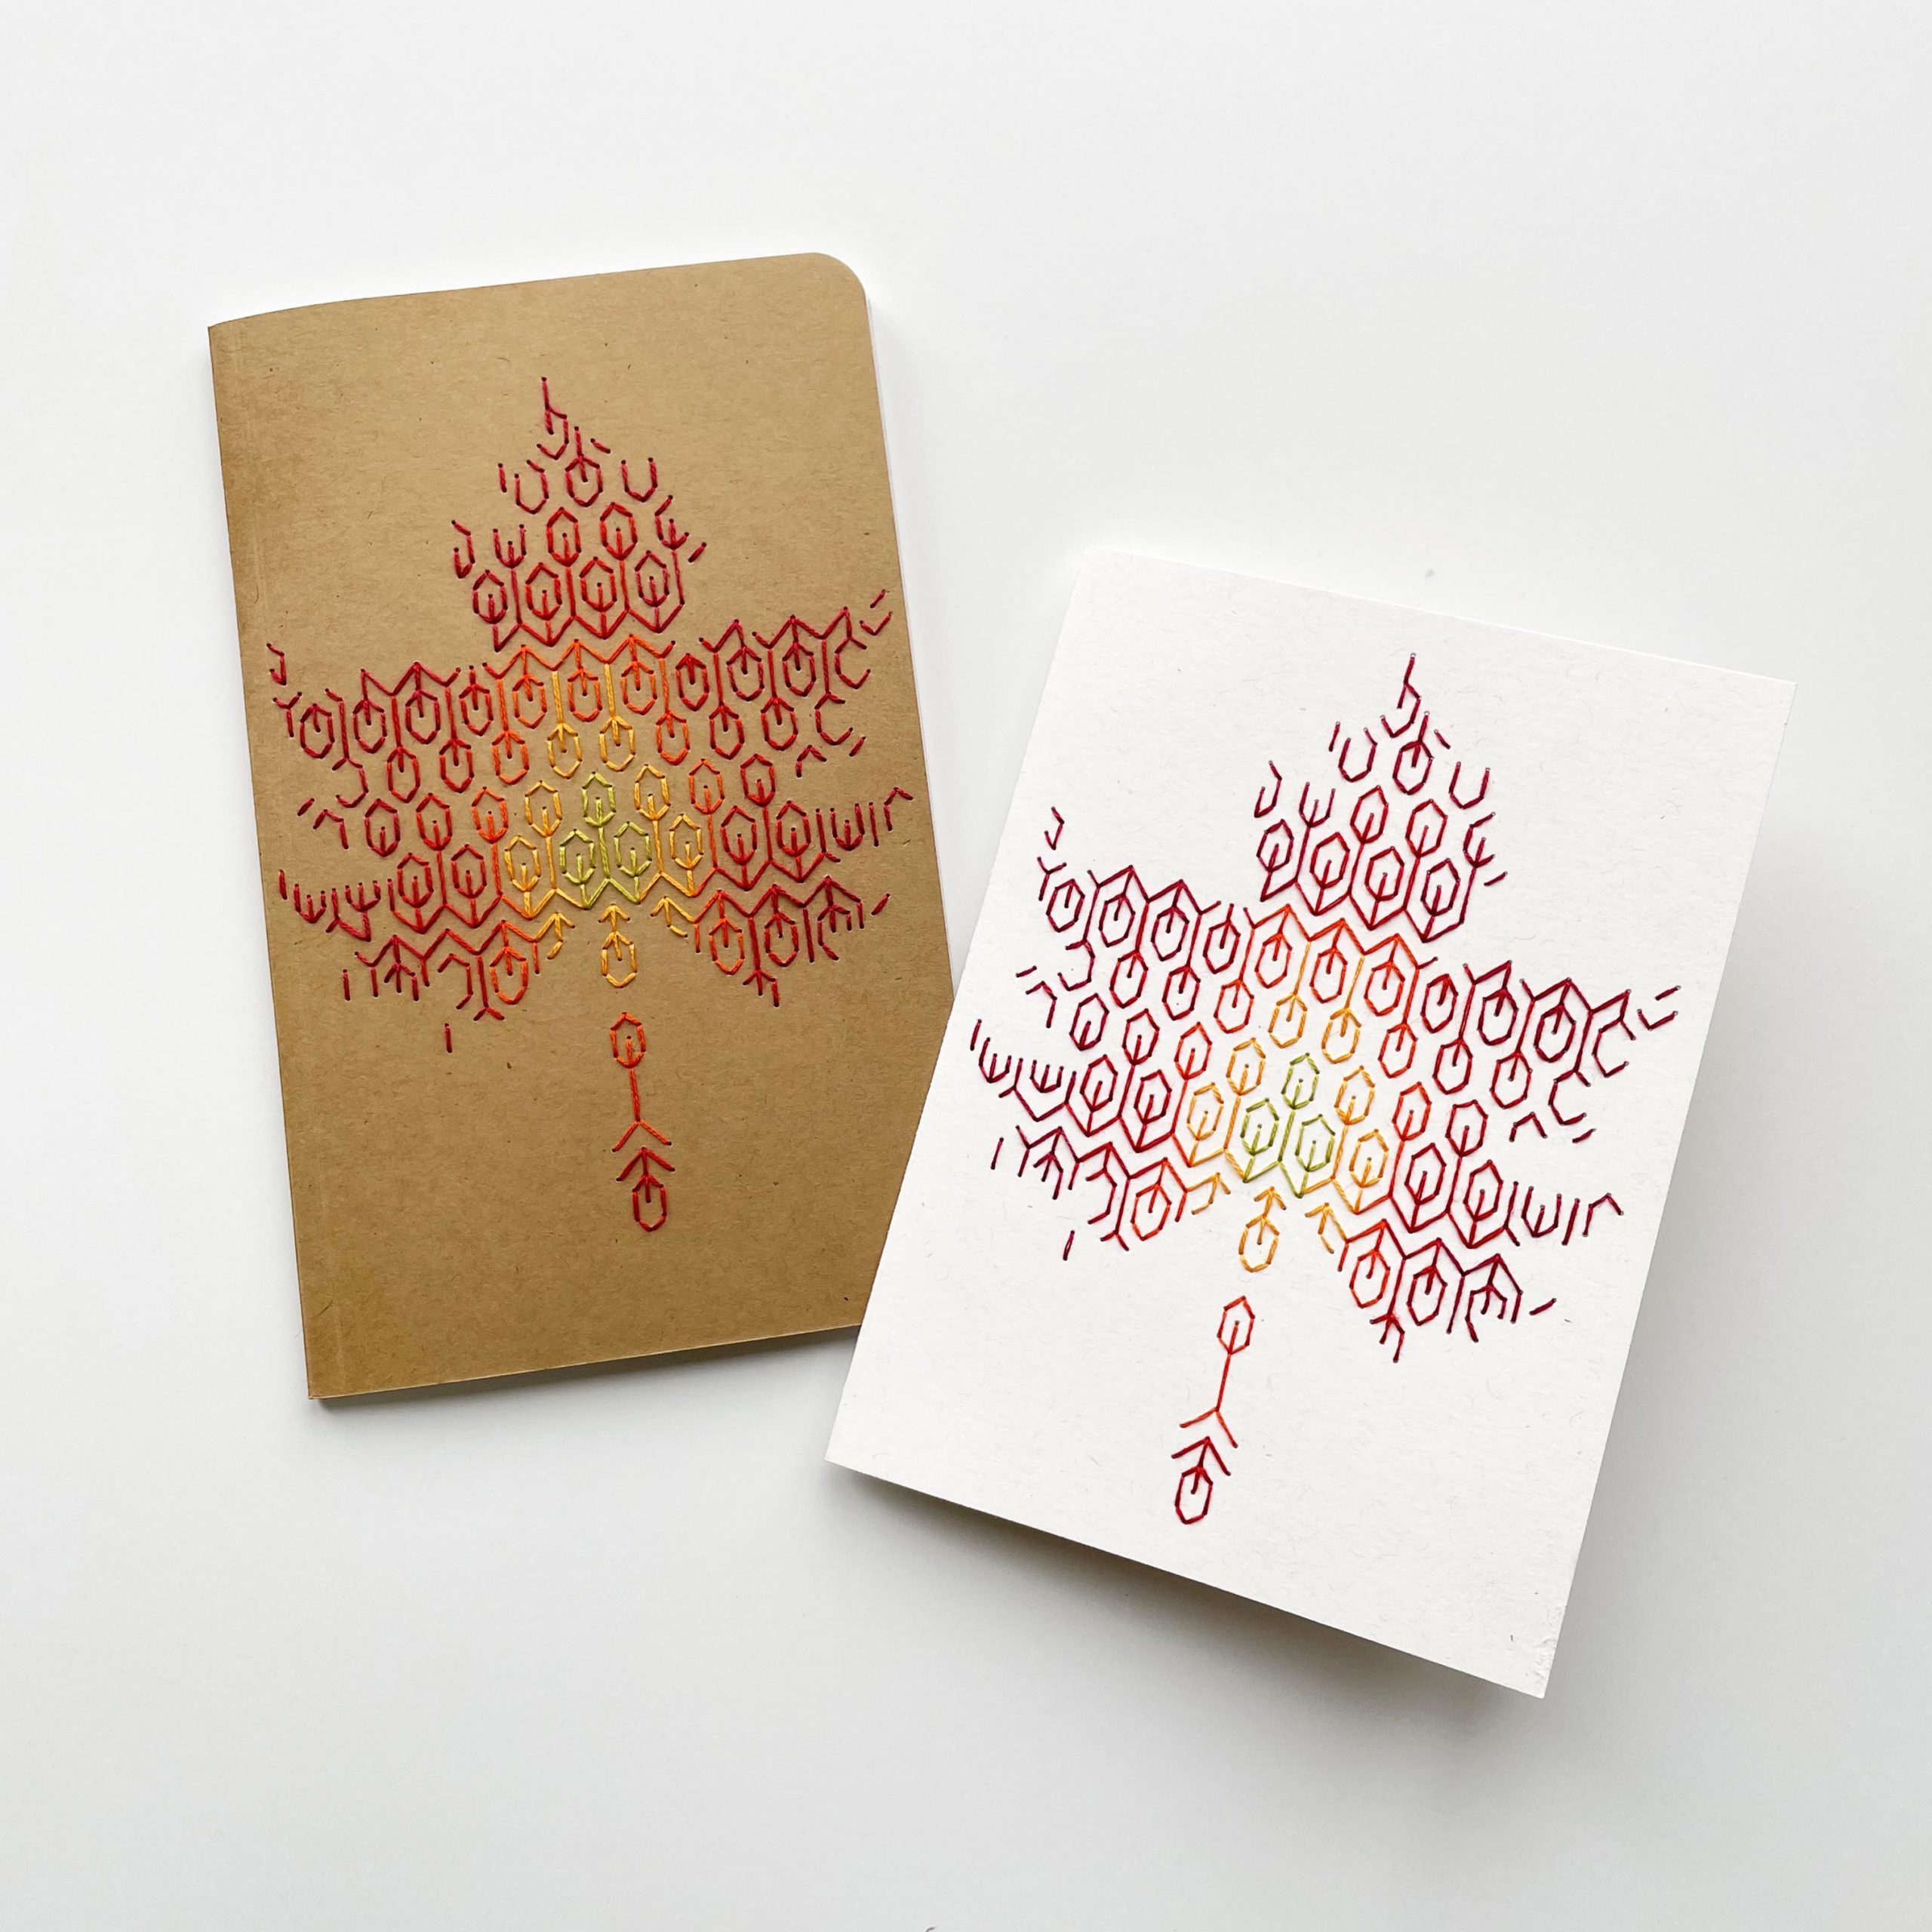 Fall Foliage paper embroidery pattern by Mayuka Fiber Art - Maydel